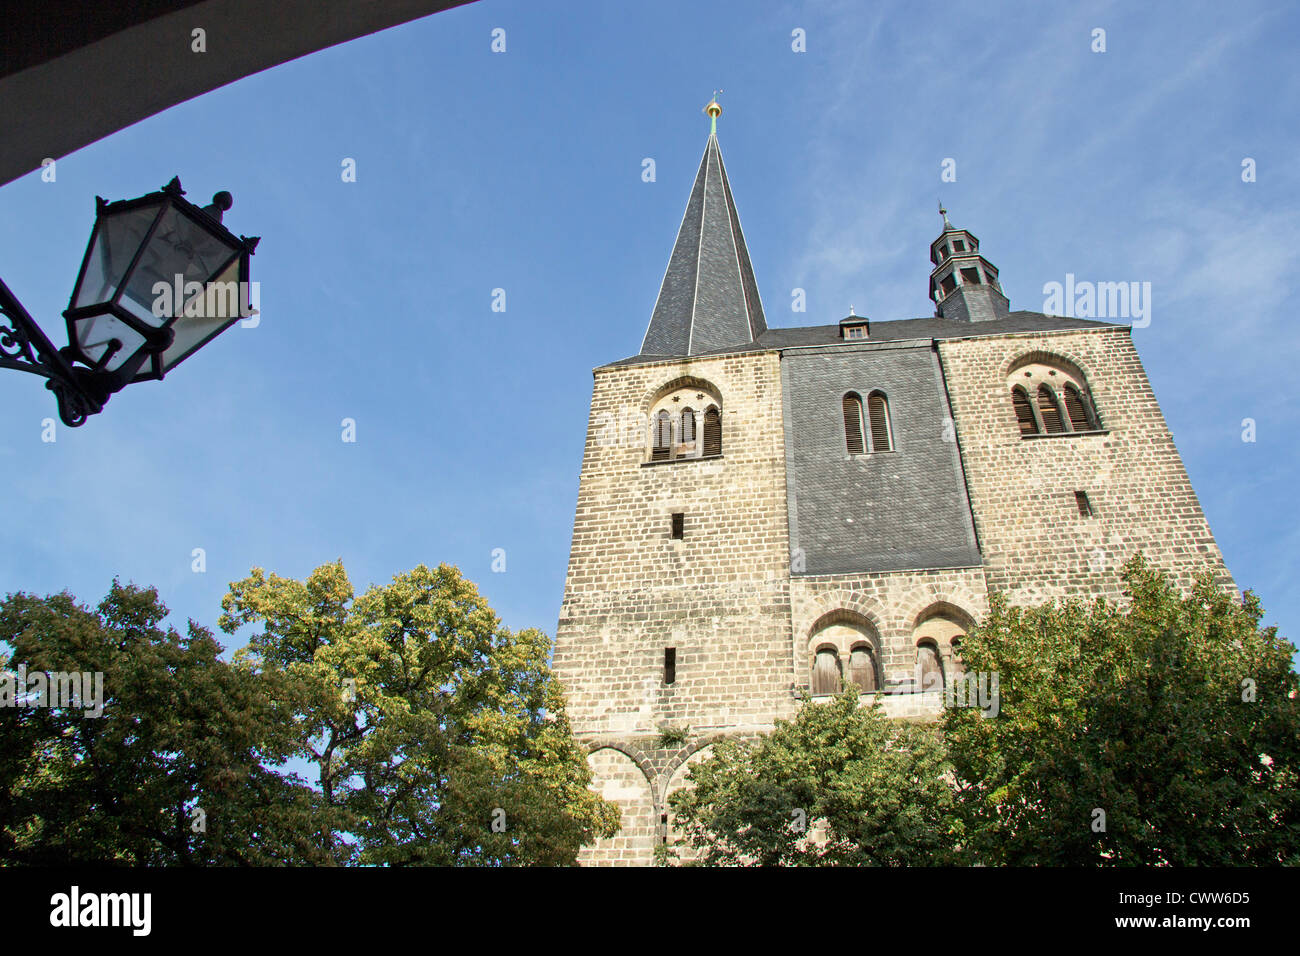 St. Benedikti Church, Quedlinburg, Saxony-Anhalt, Germany Stock Photo